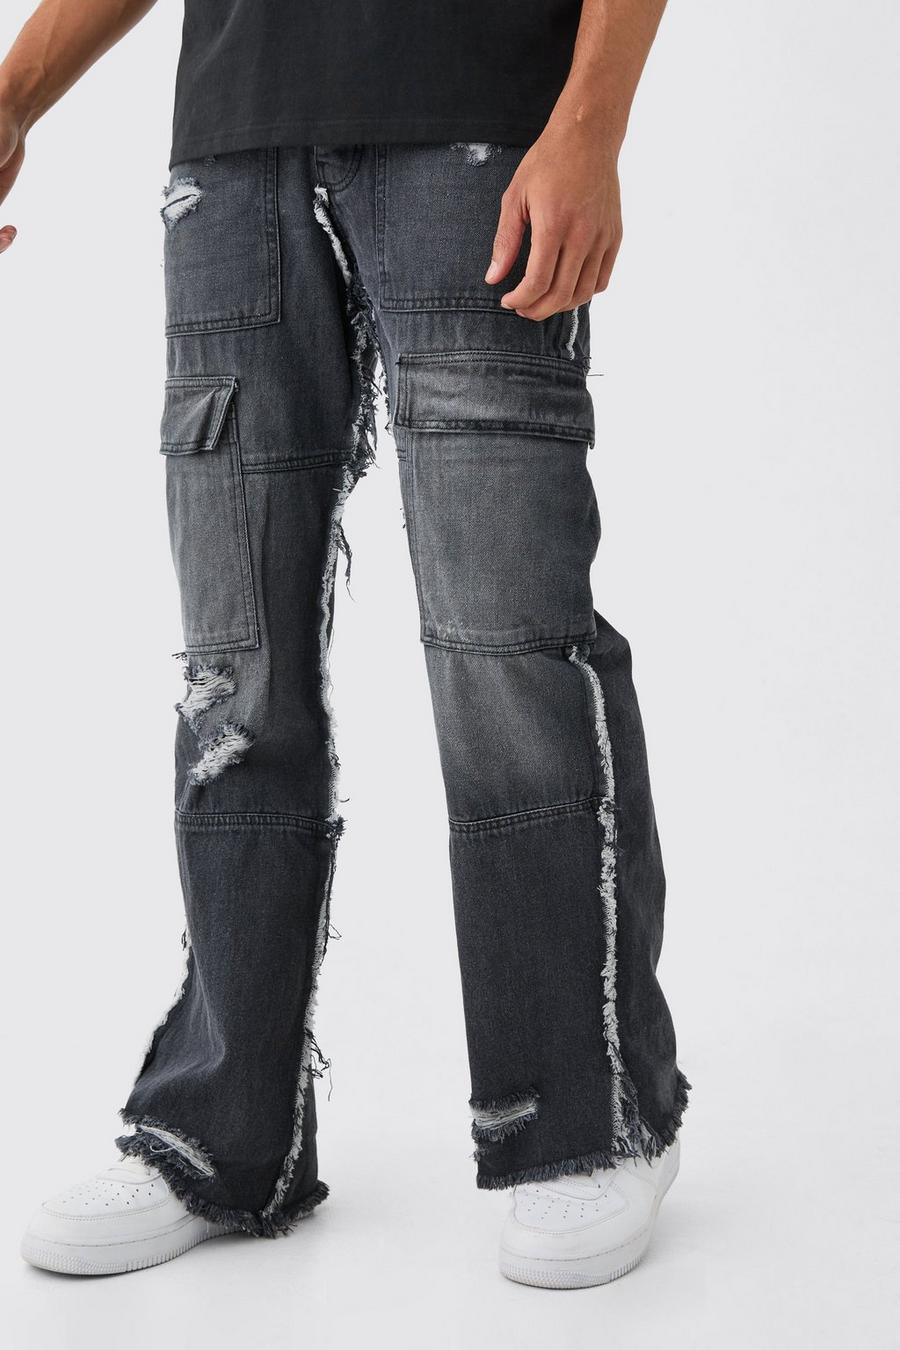 Jeans Cargo rilassati in denim rigido a zampa con fondo sfilacciato, Washed black